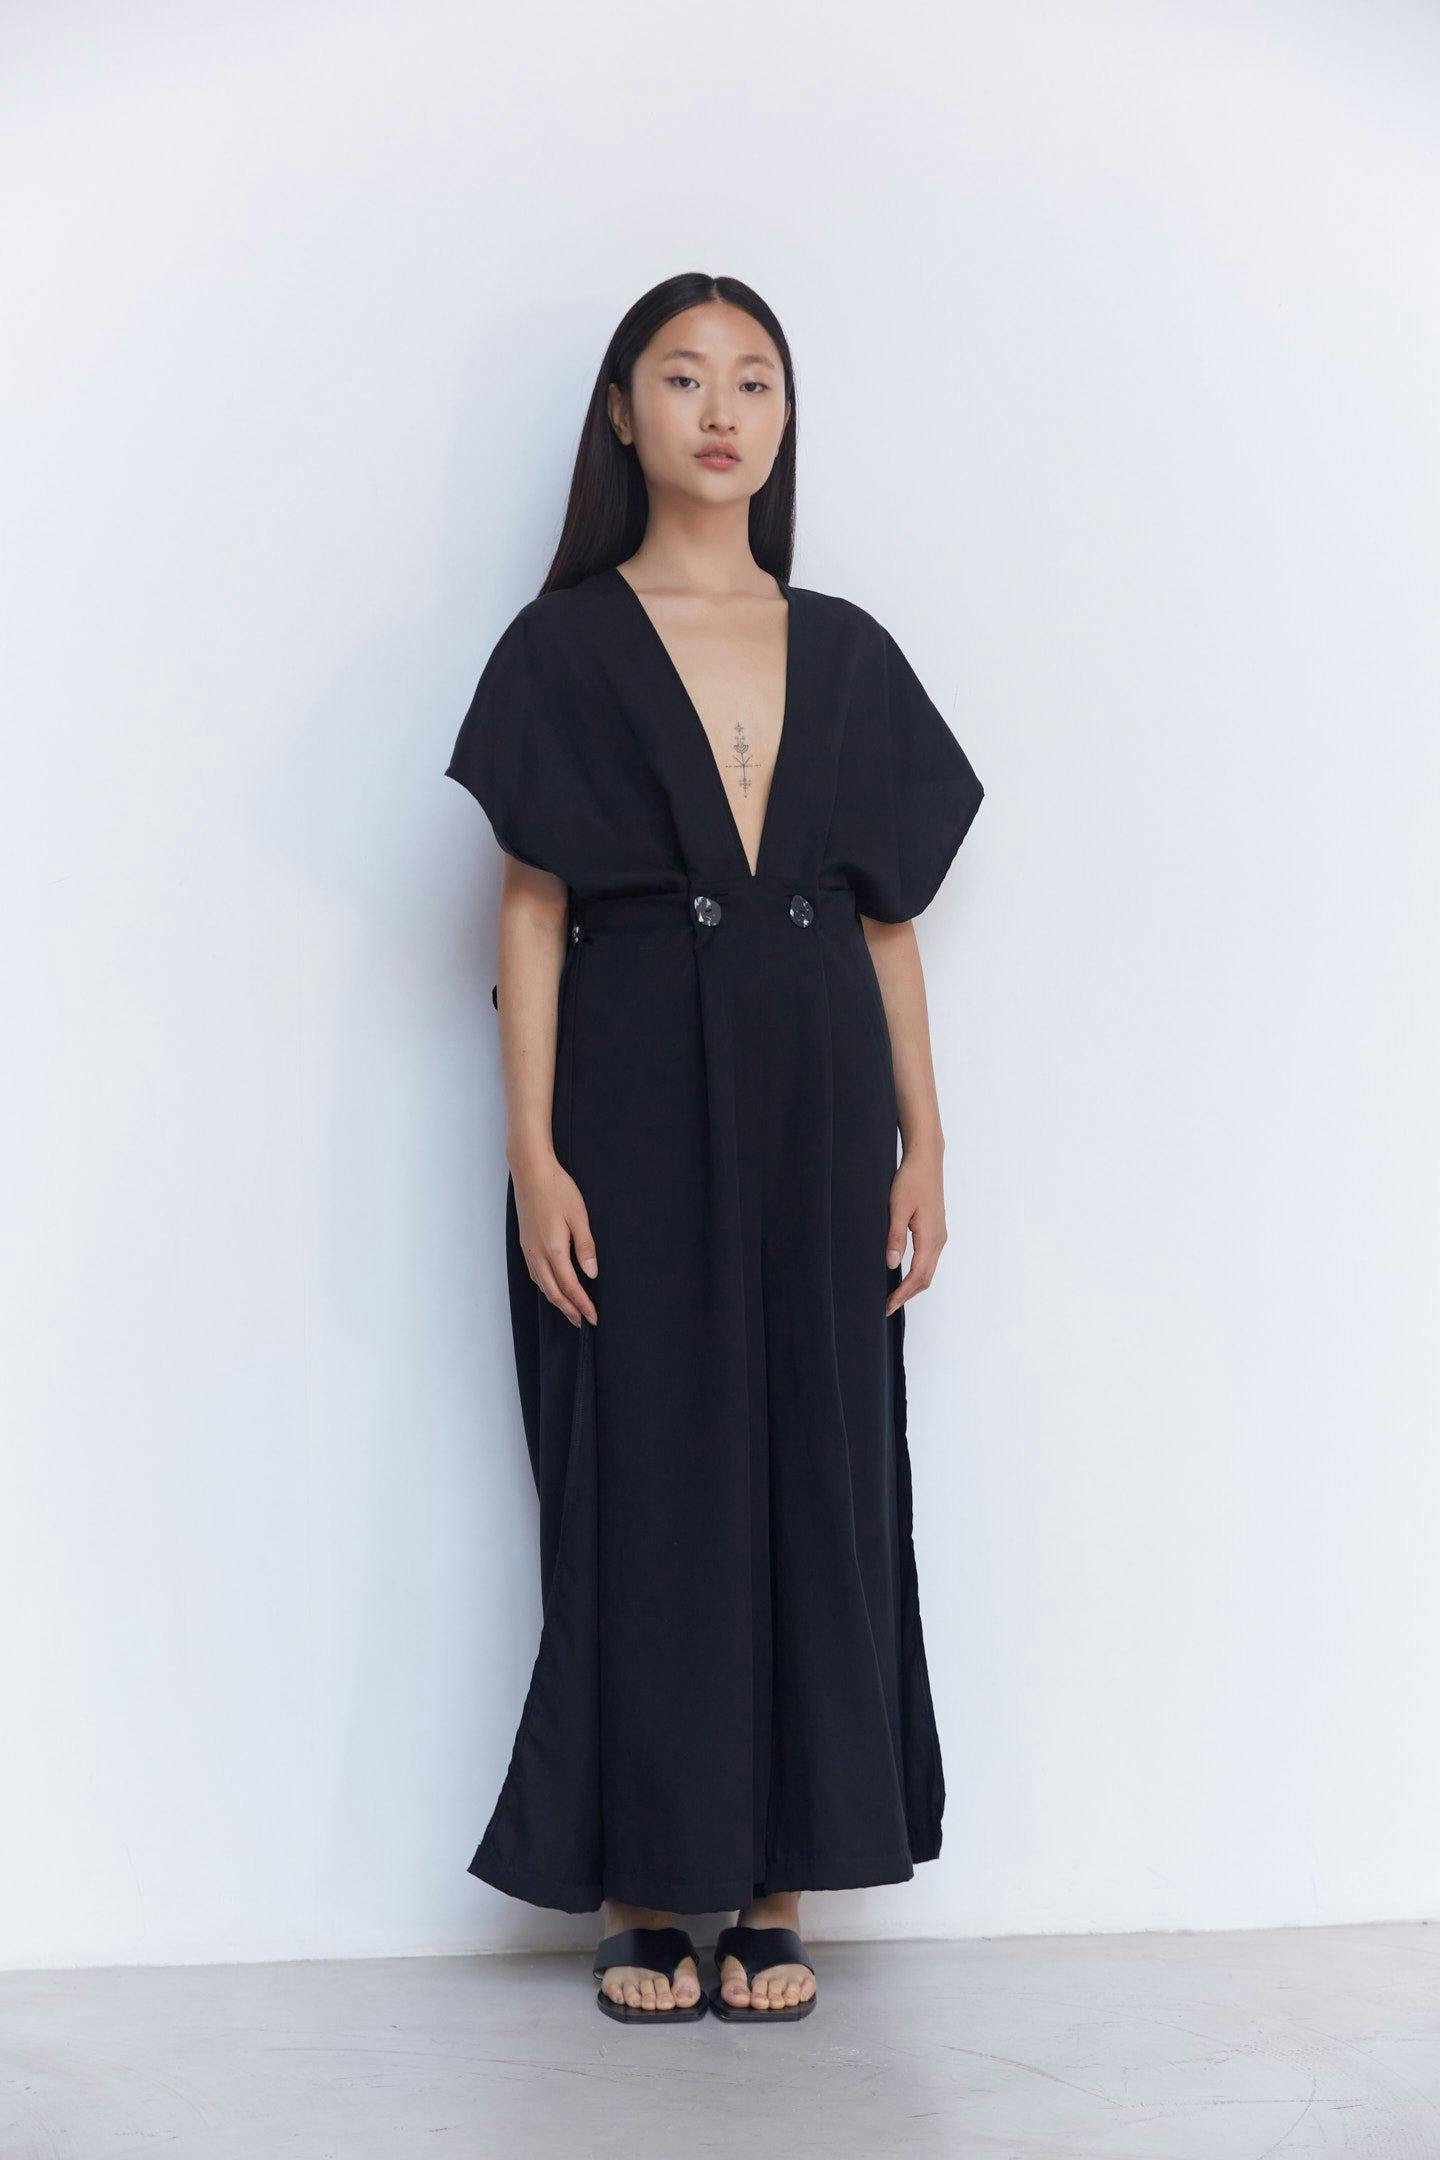 Black Monosuit: Item 003 Black, a product by Studio cumbre